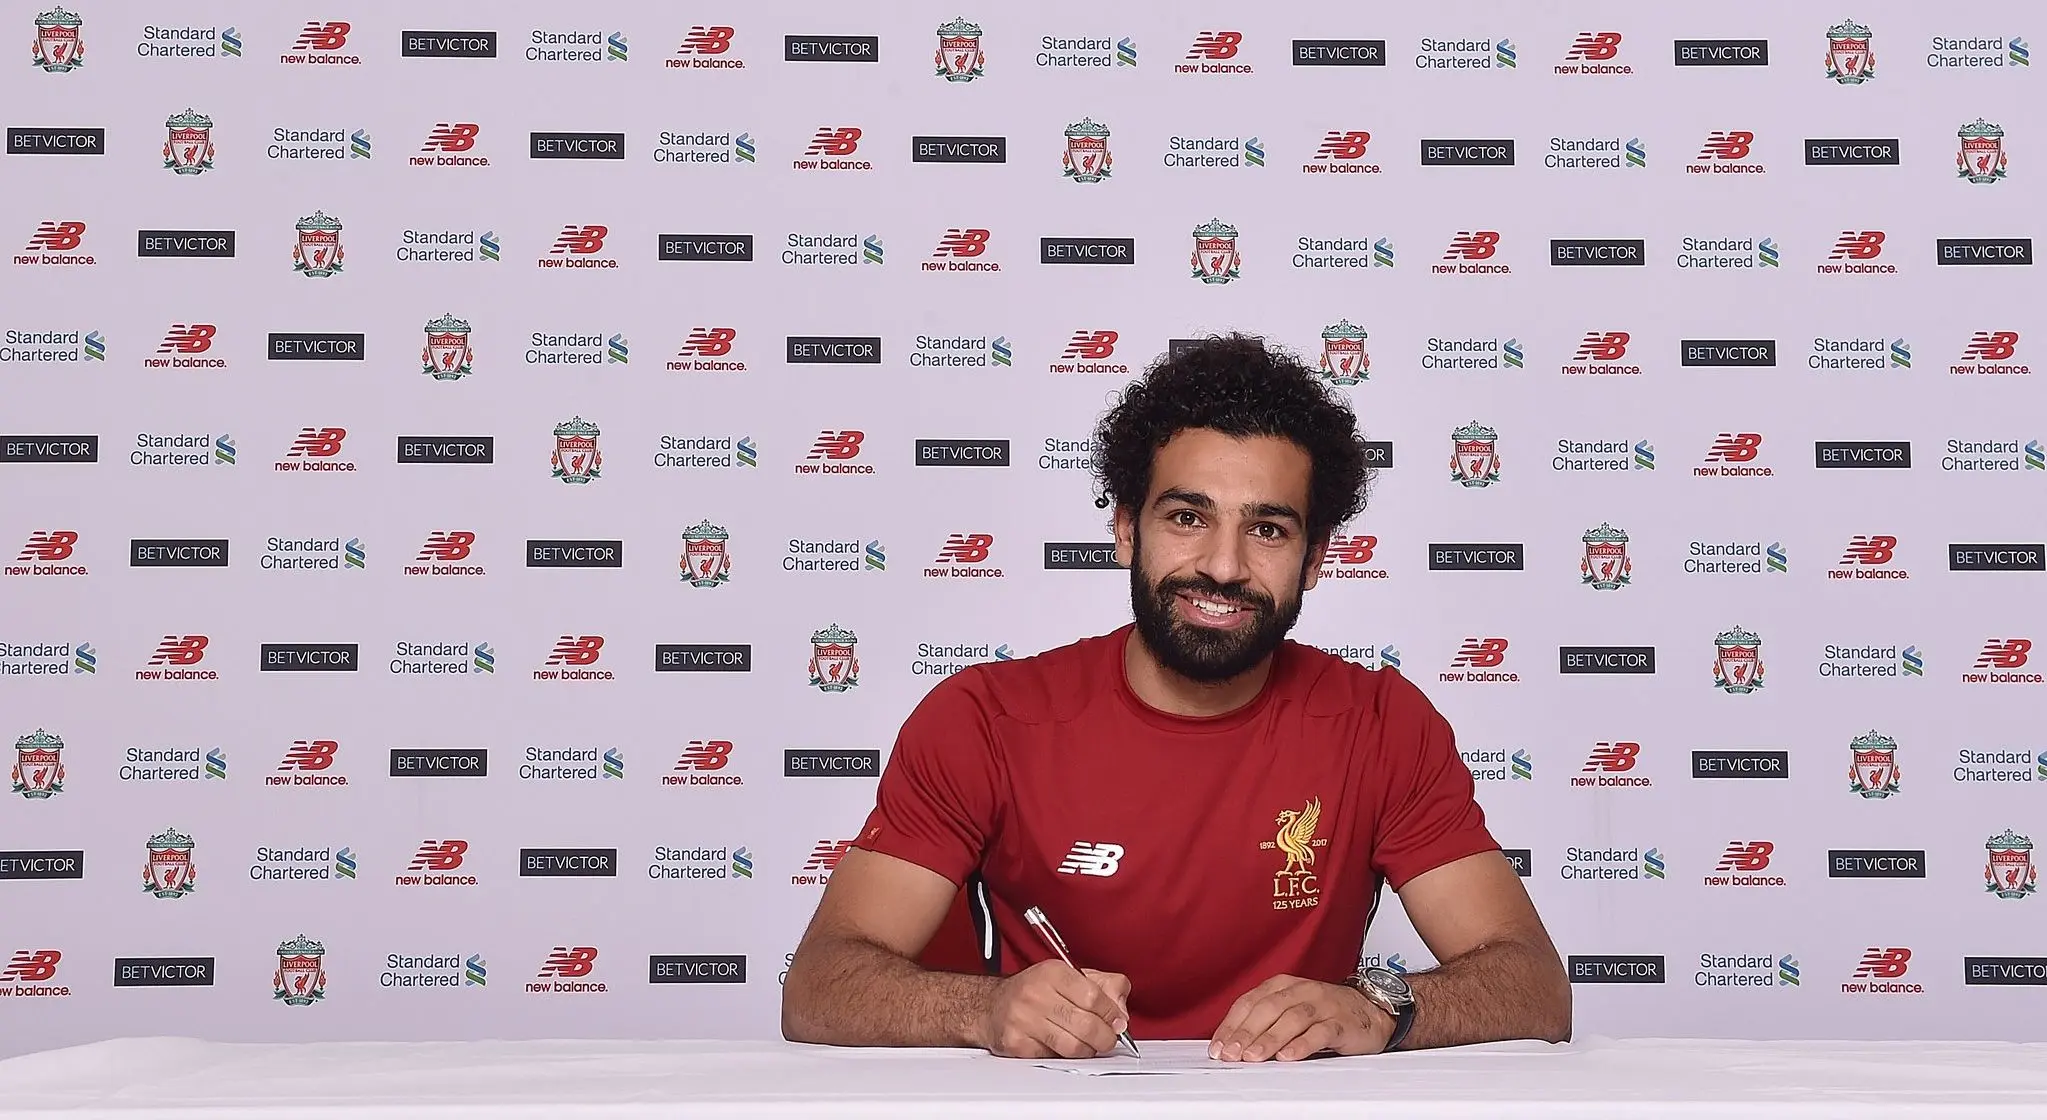 Vidéo : Liverpool a trouvé la meilleure façon d’annoncer la signature de Salah sur Twitter 